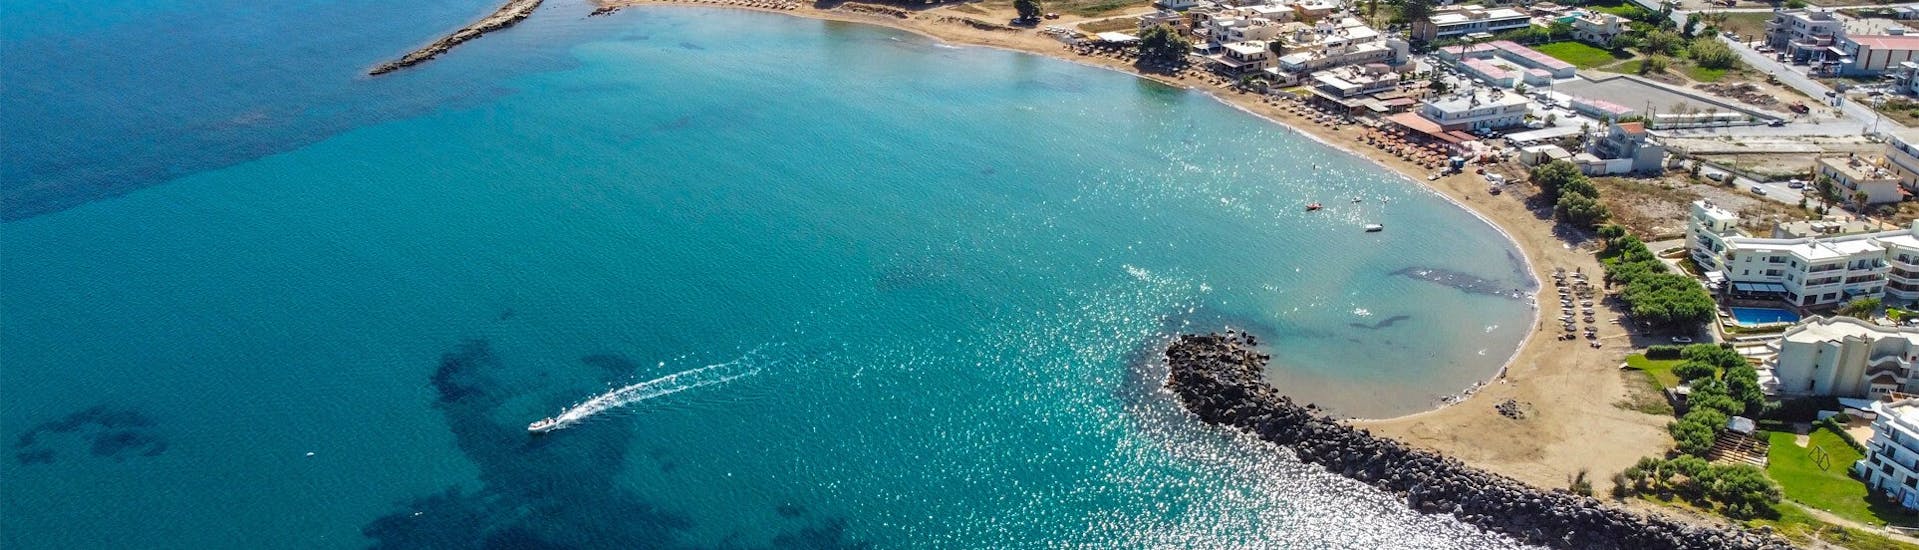 Landschaft an der Küste von Kissamos mit ihrem wunderschönen blauen Wasser während SUP-Verleih in Kissamos.